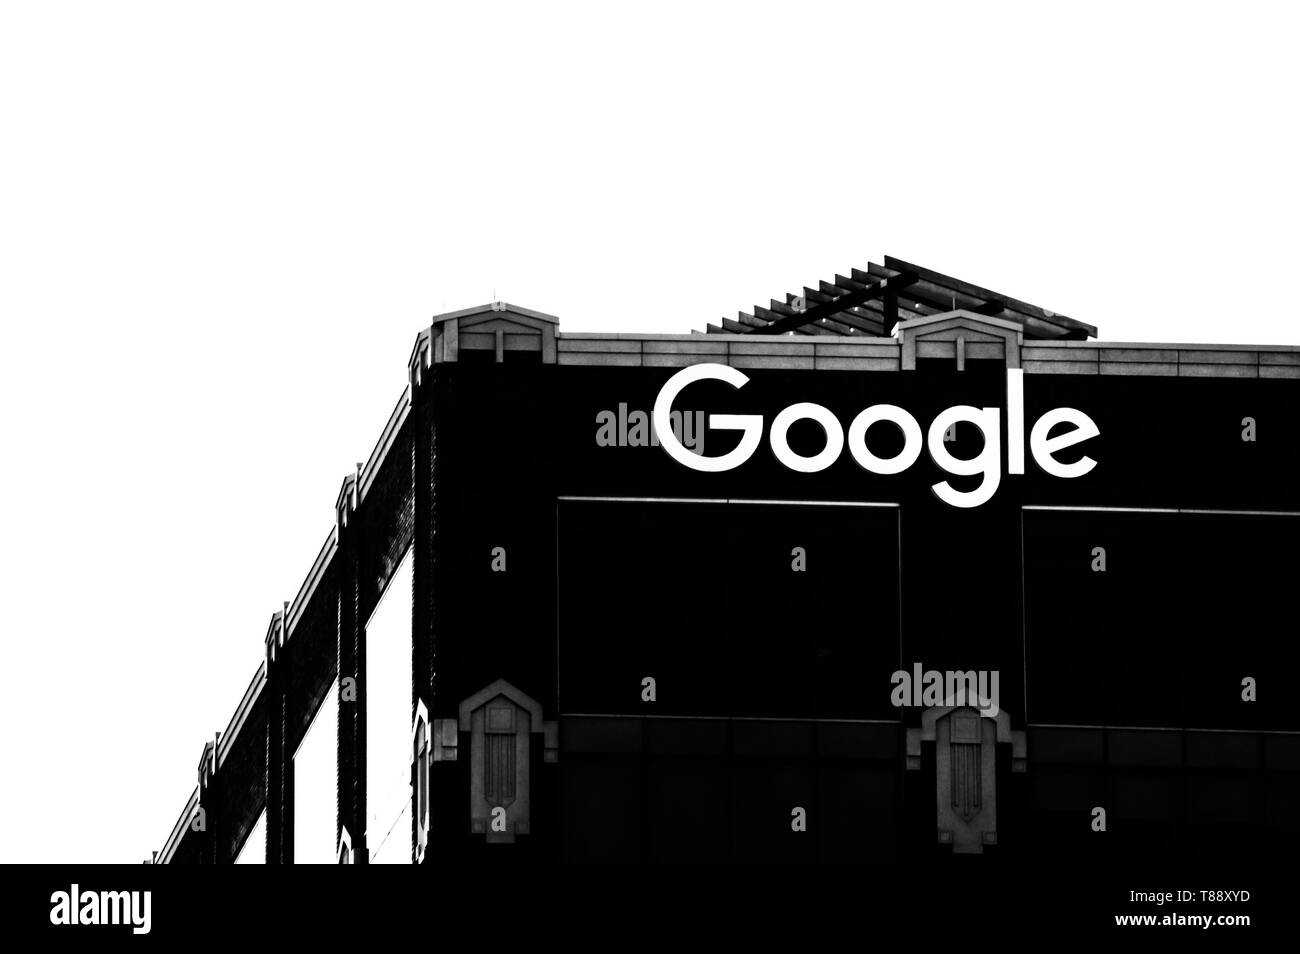 Fulton Market, Chicago-May 4, 2019 : une silhouette en noir et blanc de l'immeuble de bureaux de Google près de la boucle de l'Ouest. Rues de Chicago. Banque D'Images